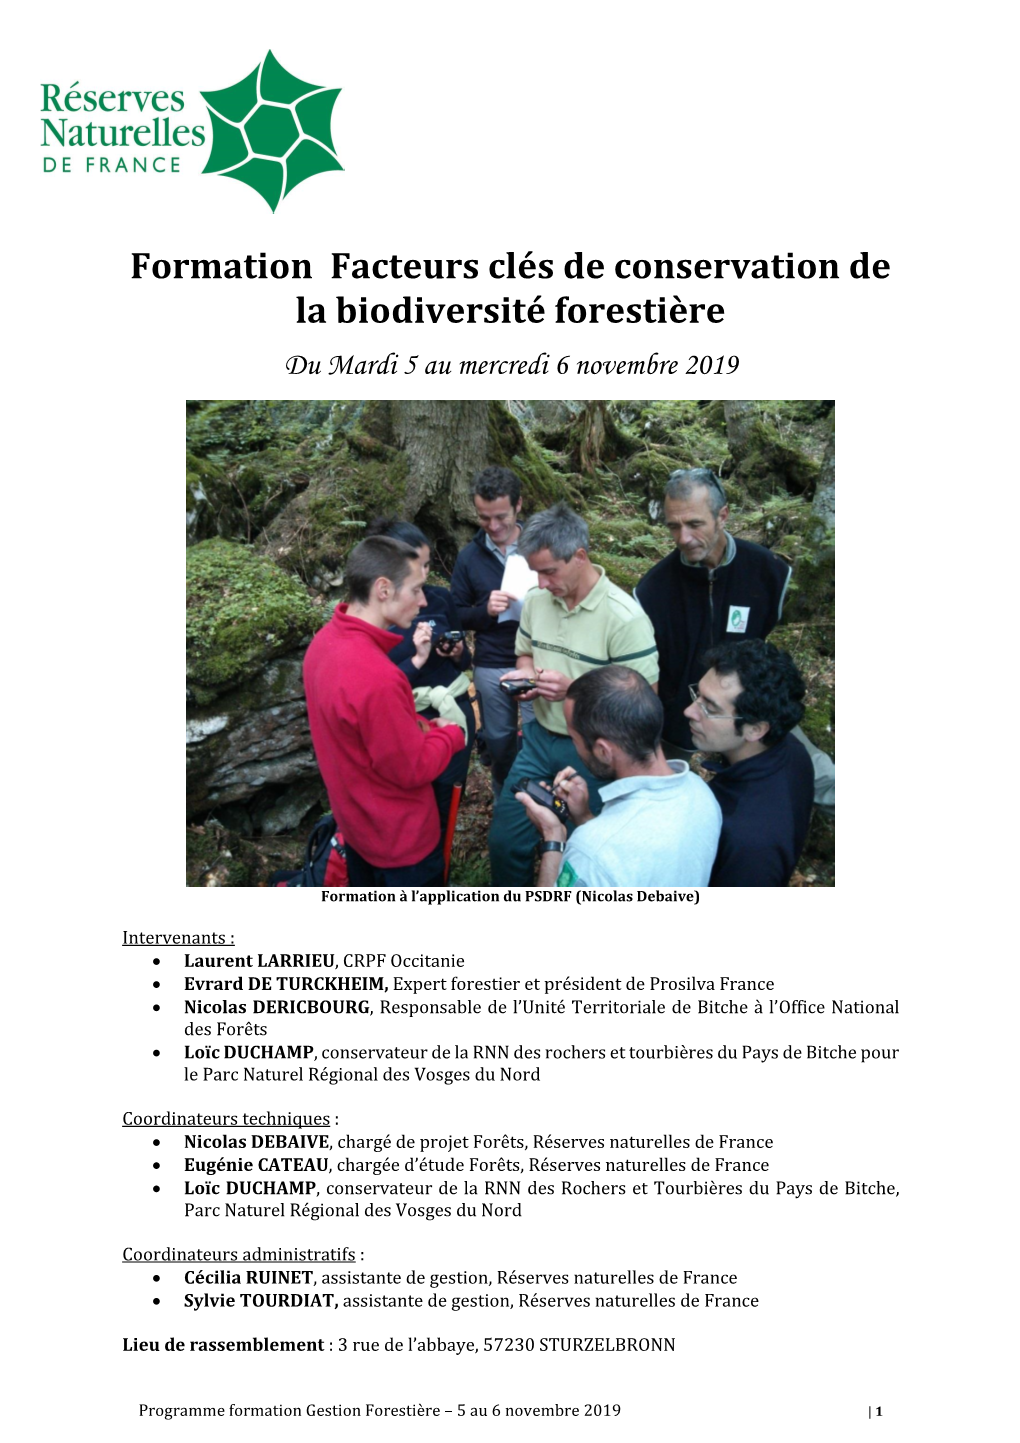 Formation Facteurs Clés De Conservation De La Biodiversité Forestière Du Mardi 5 Au Mercredi 6 Novembre 2019